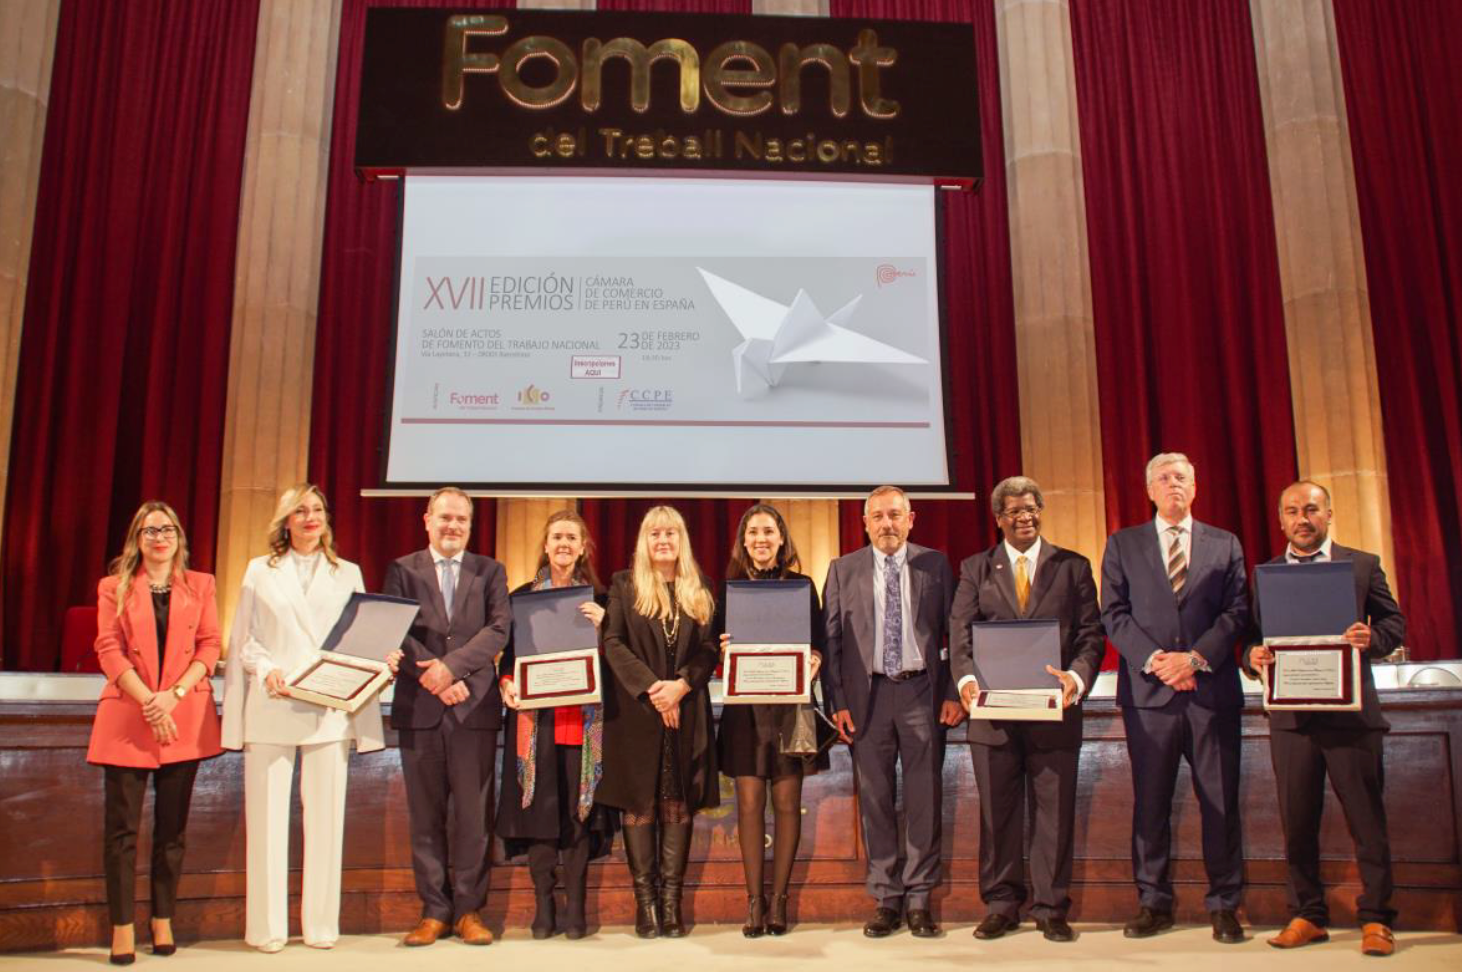 Asistimos a los XVII premios de la Cámara de Comercio de Perú en España